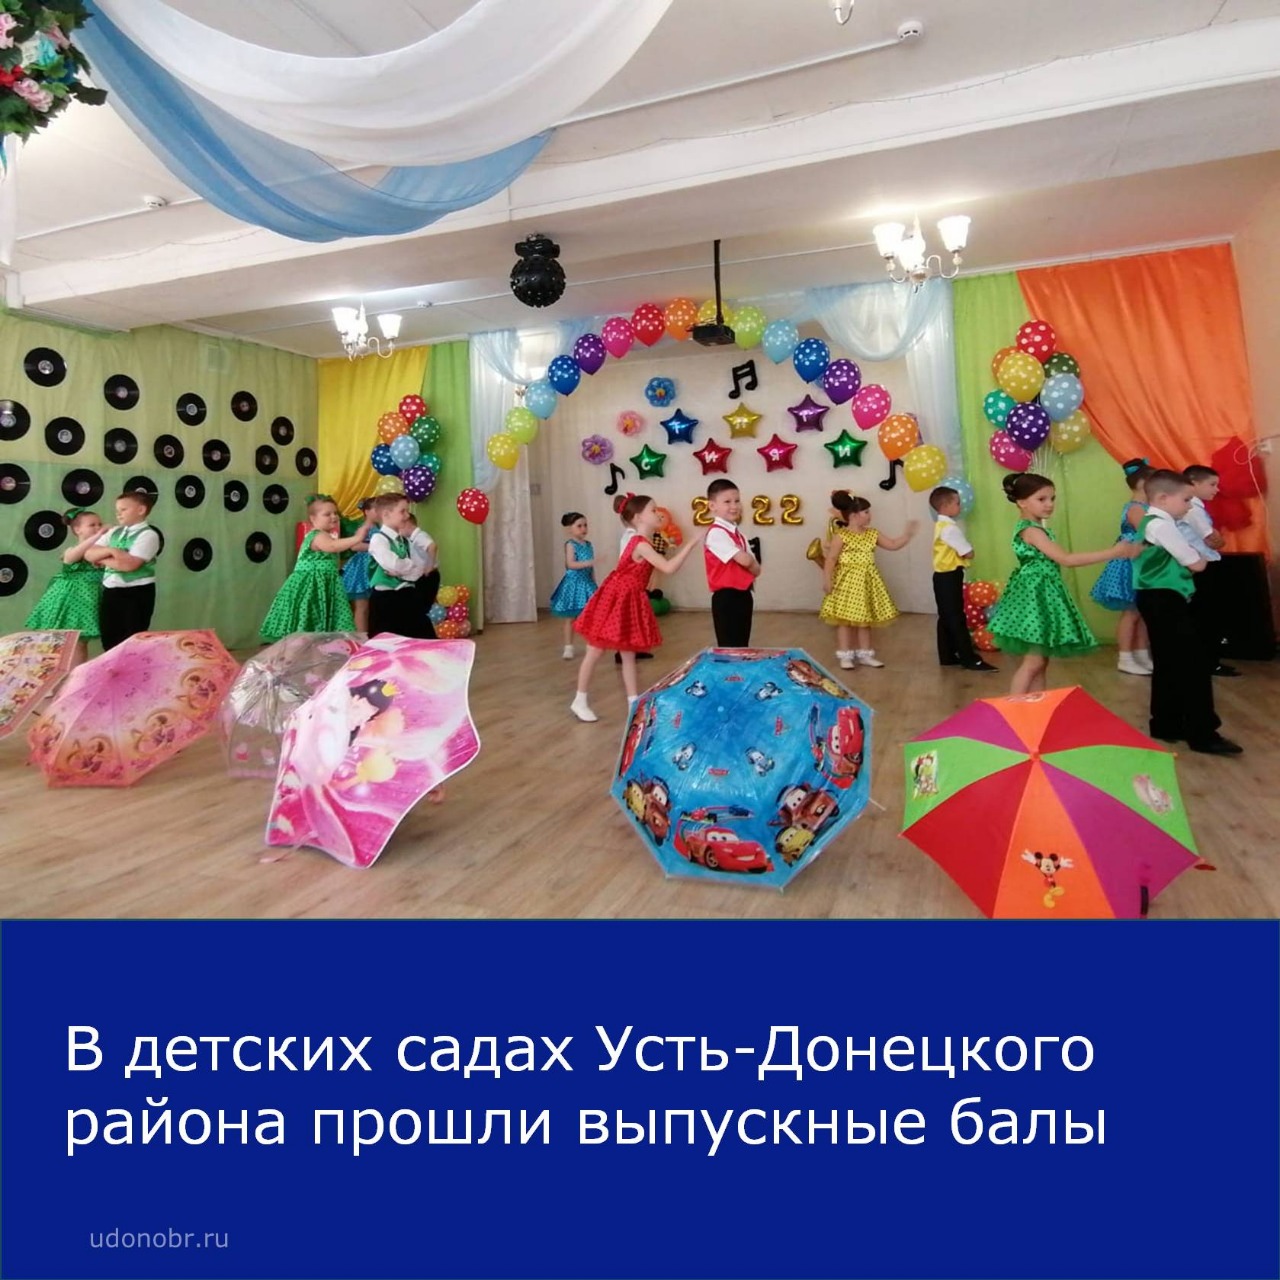 В детских садах Усть-Донецкого района прошли выпускные балы